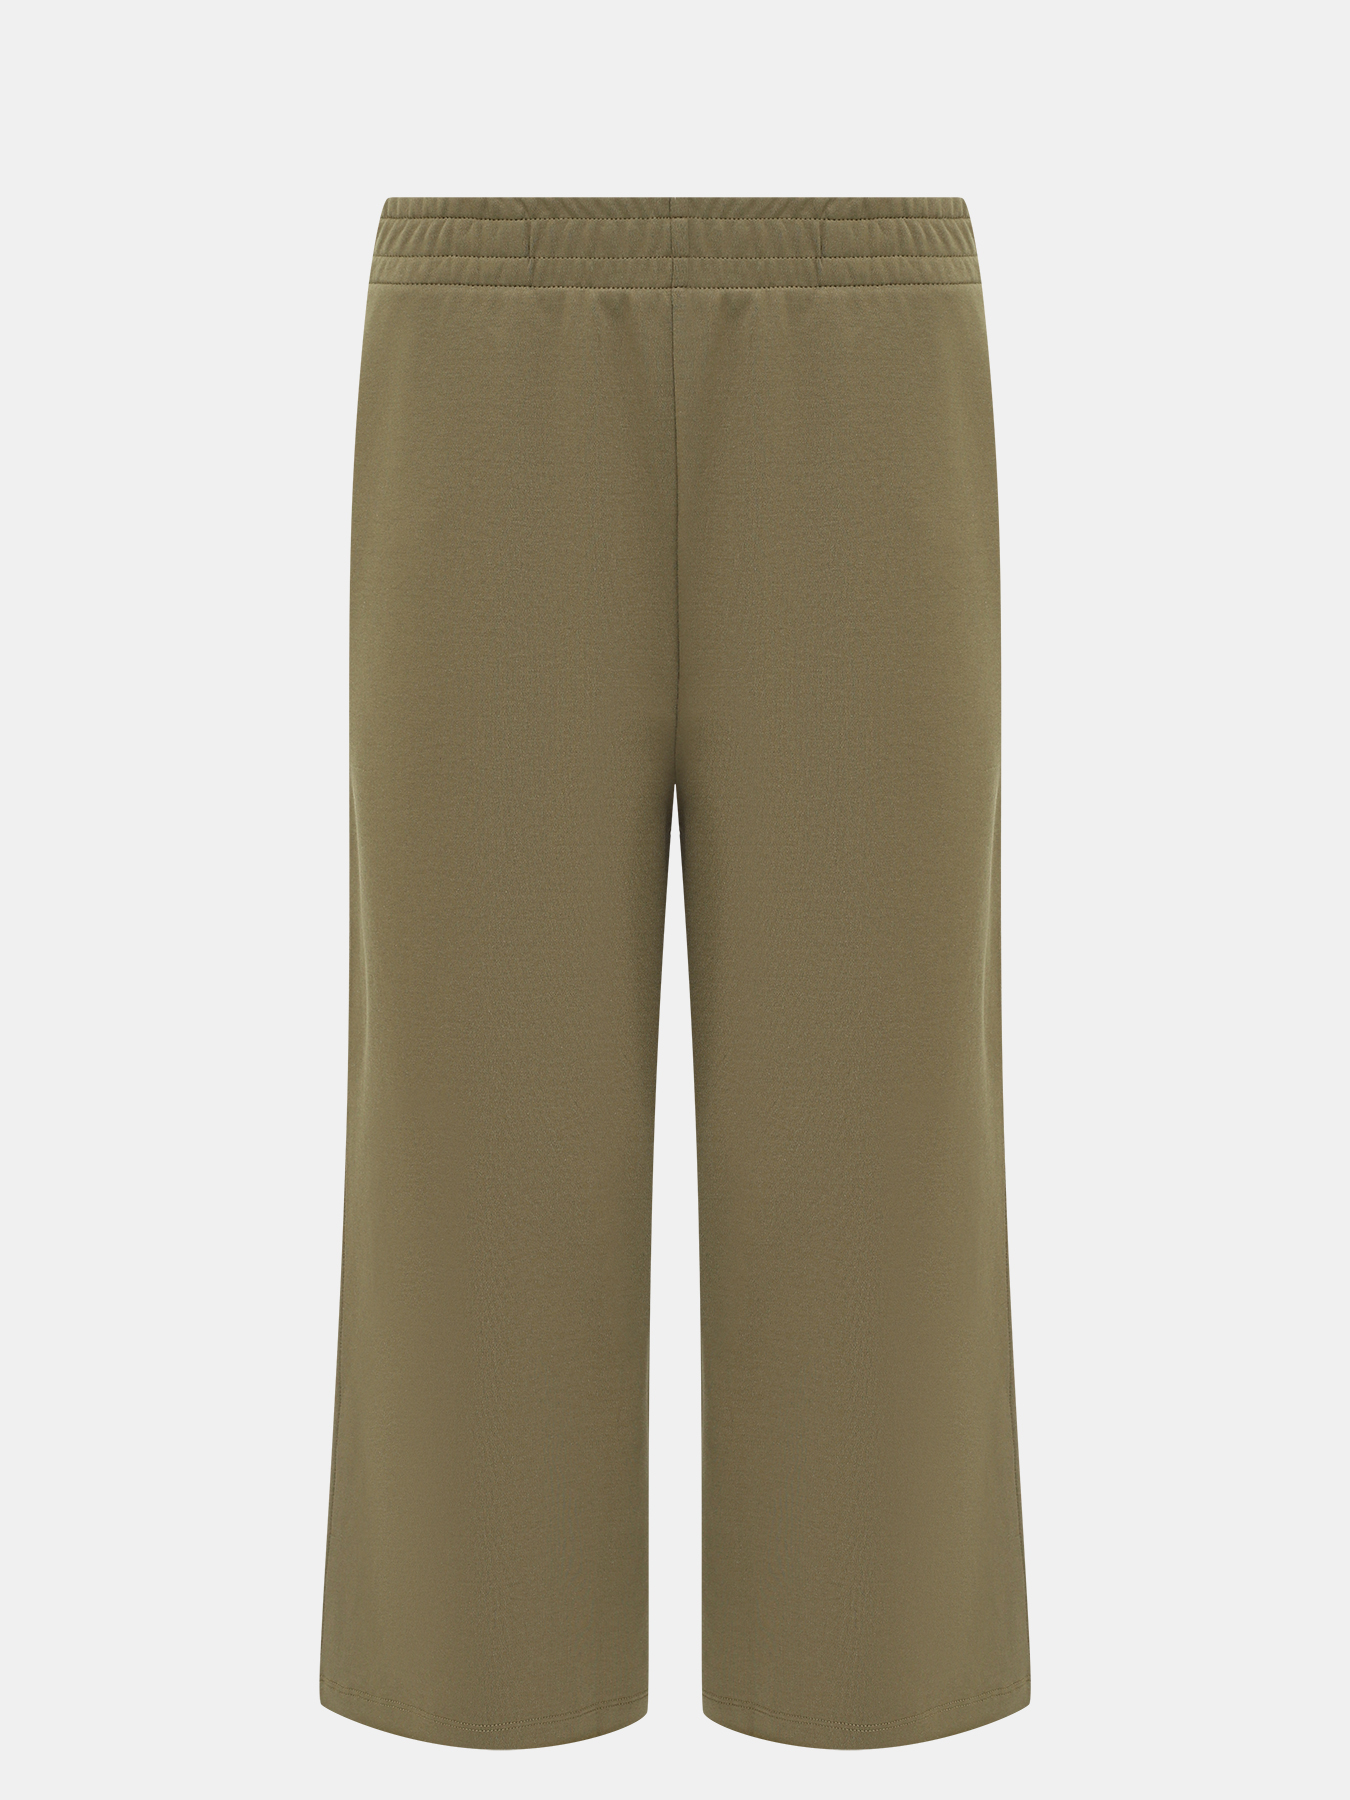 Спортивные брюки Enatea BOSS 414132-043, цвет хаки, размер 44-46 - фото 1